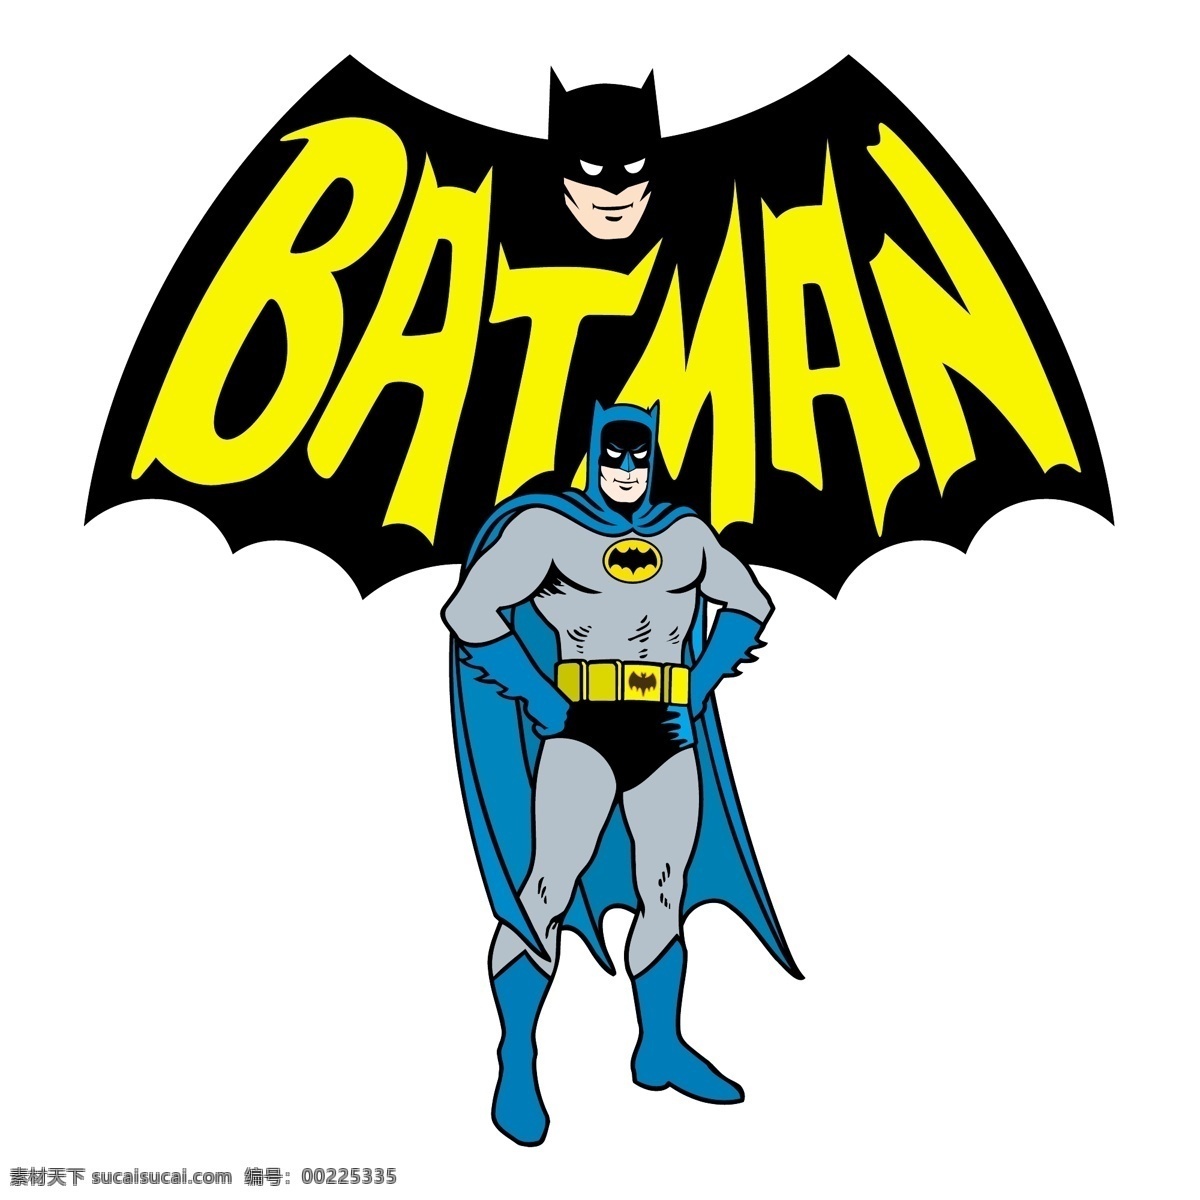 蝙蝠侠 batman 矢量卡通 明星偶像 矢量人物 矢量